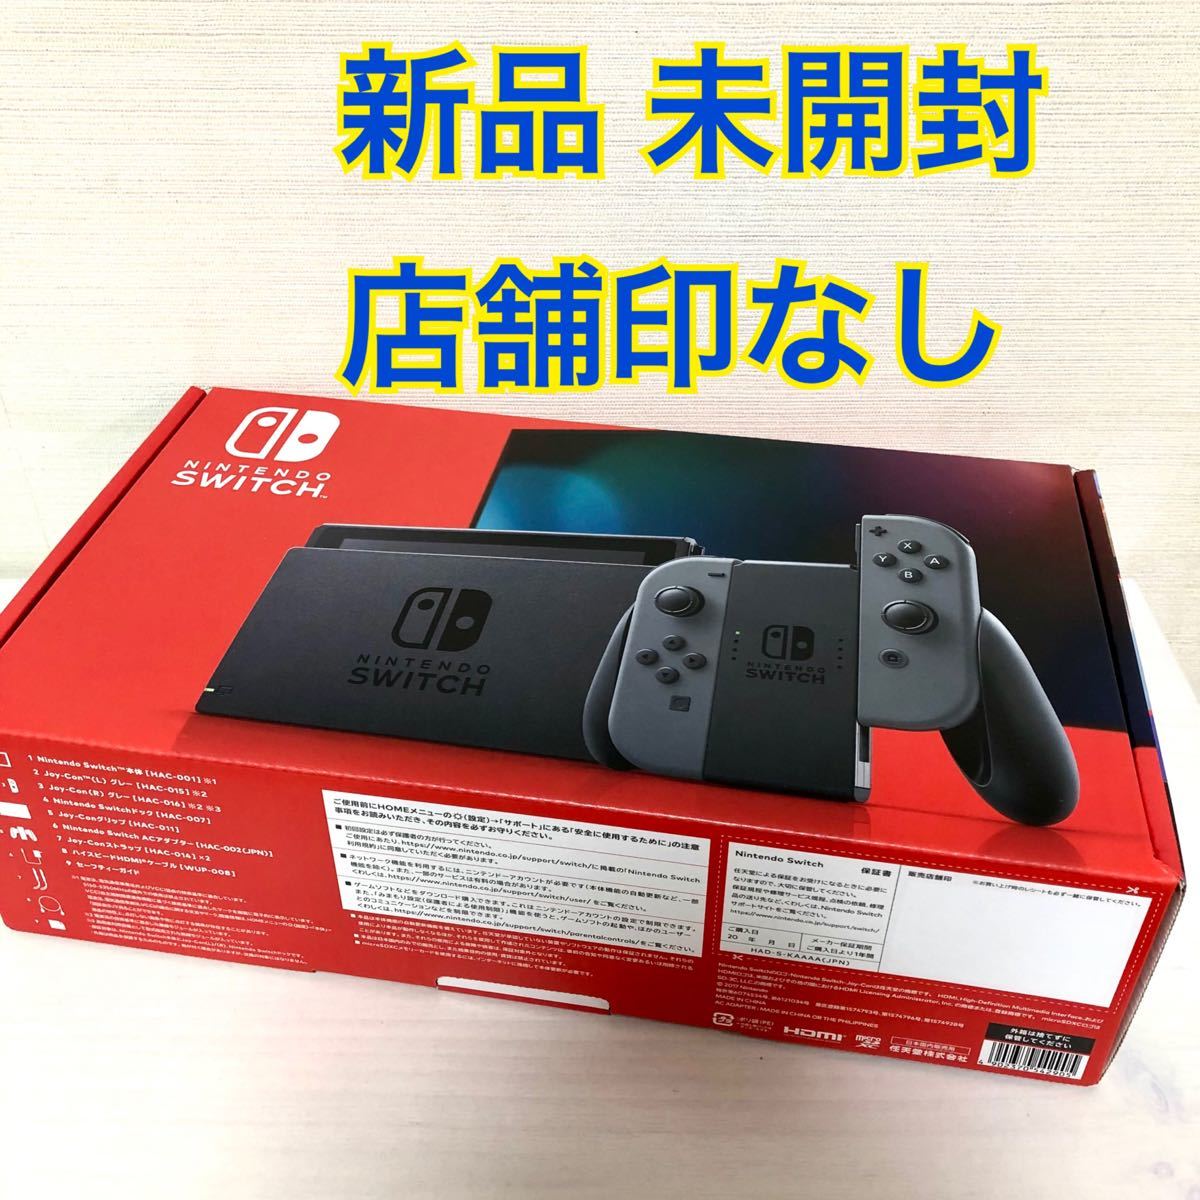 新品 Nintendo Switch ニンテンドー スイッチ 本体 グレー グレイ 新モデル 任天堂